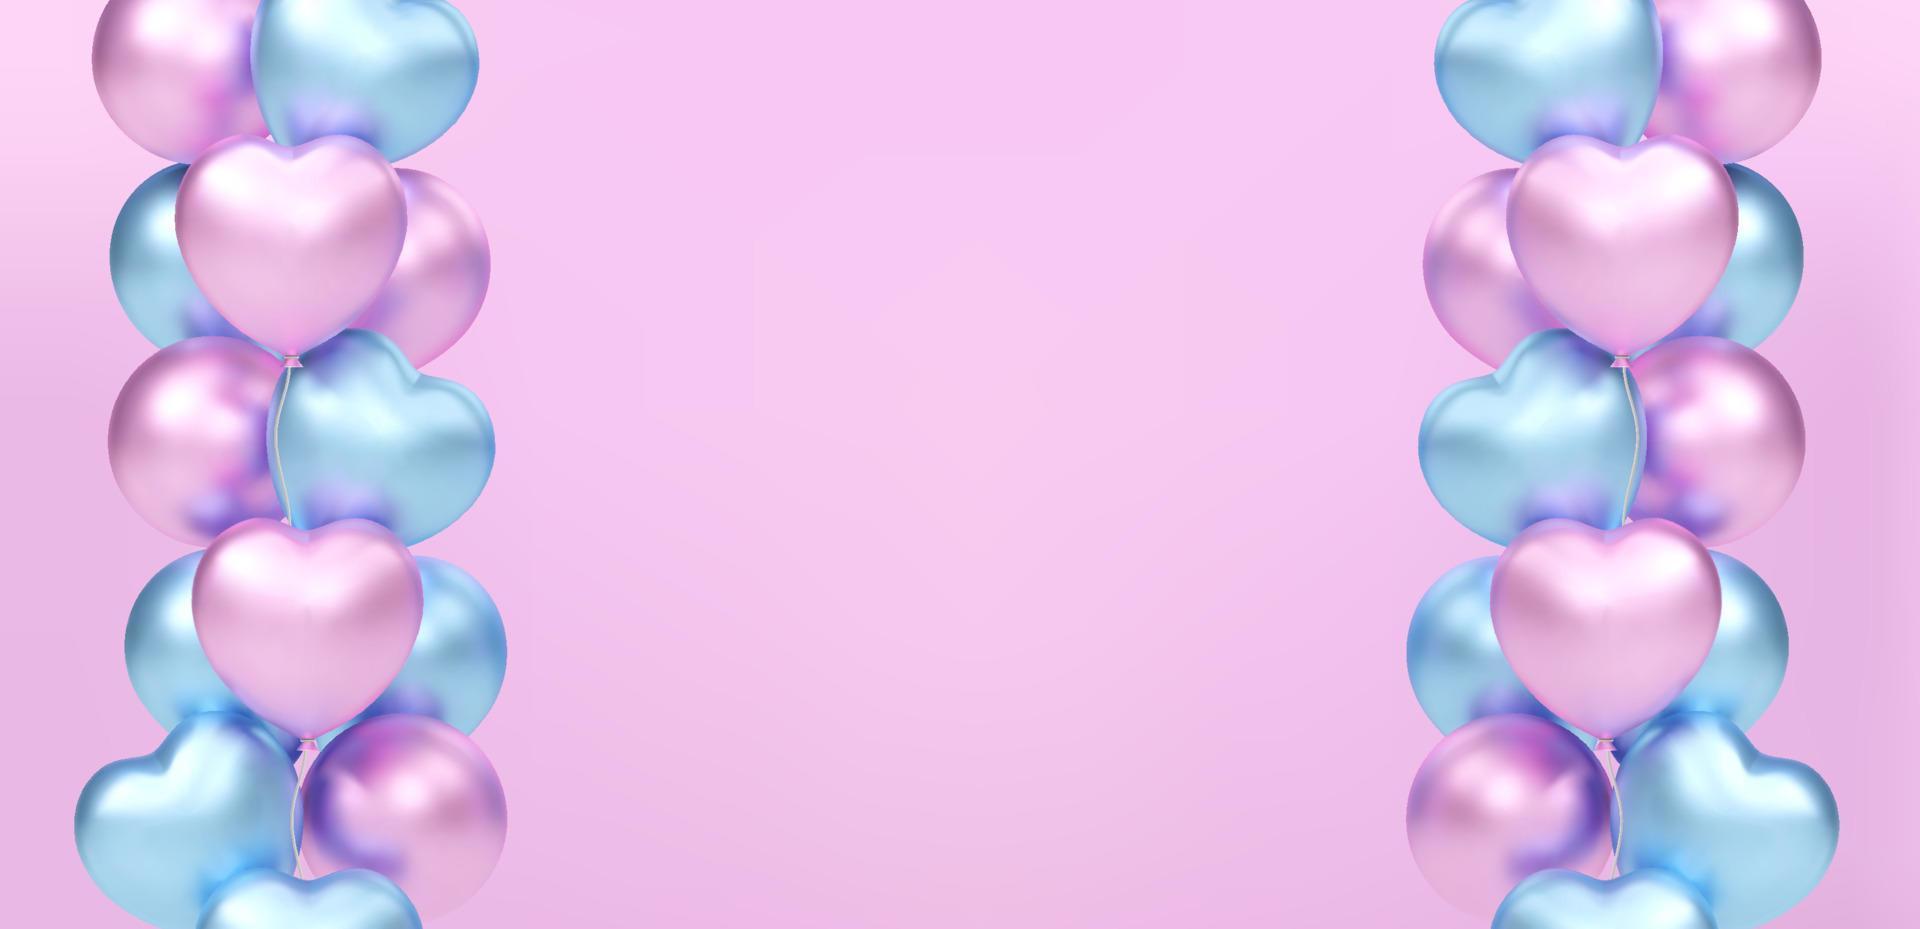 3d boeket, bundel van realistisch roze en blauw ballonnen vliegen. vector illustratie voor kaart, baby douche, geslacht onthullen partij uitnodiging, ontwerp, folder, poster, decor, banier, web, reclame